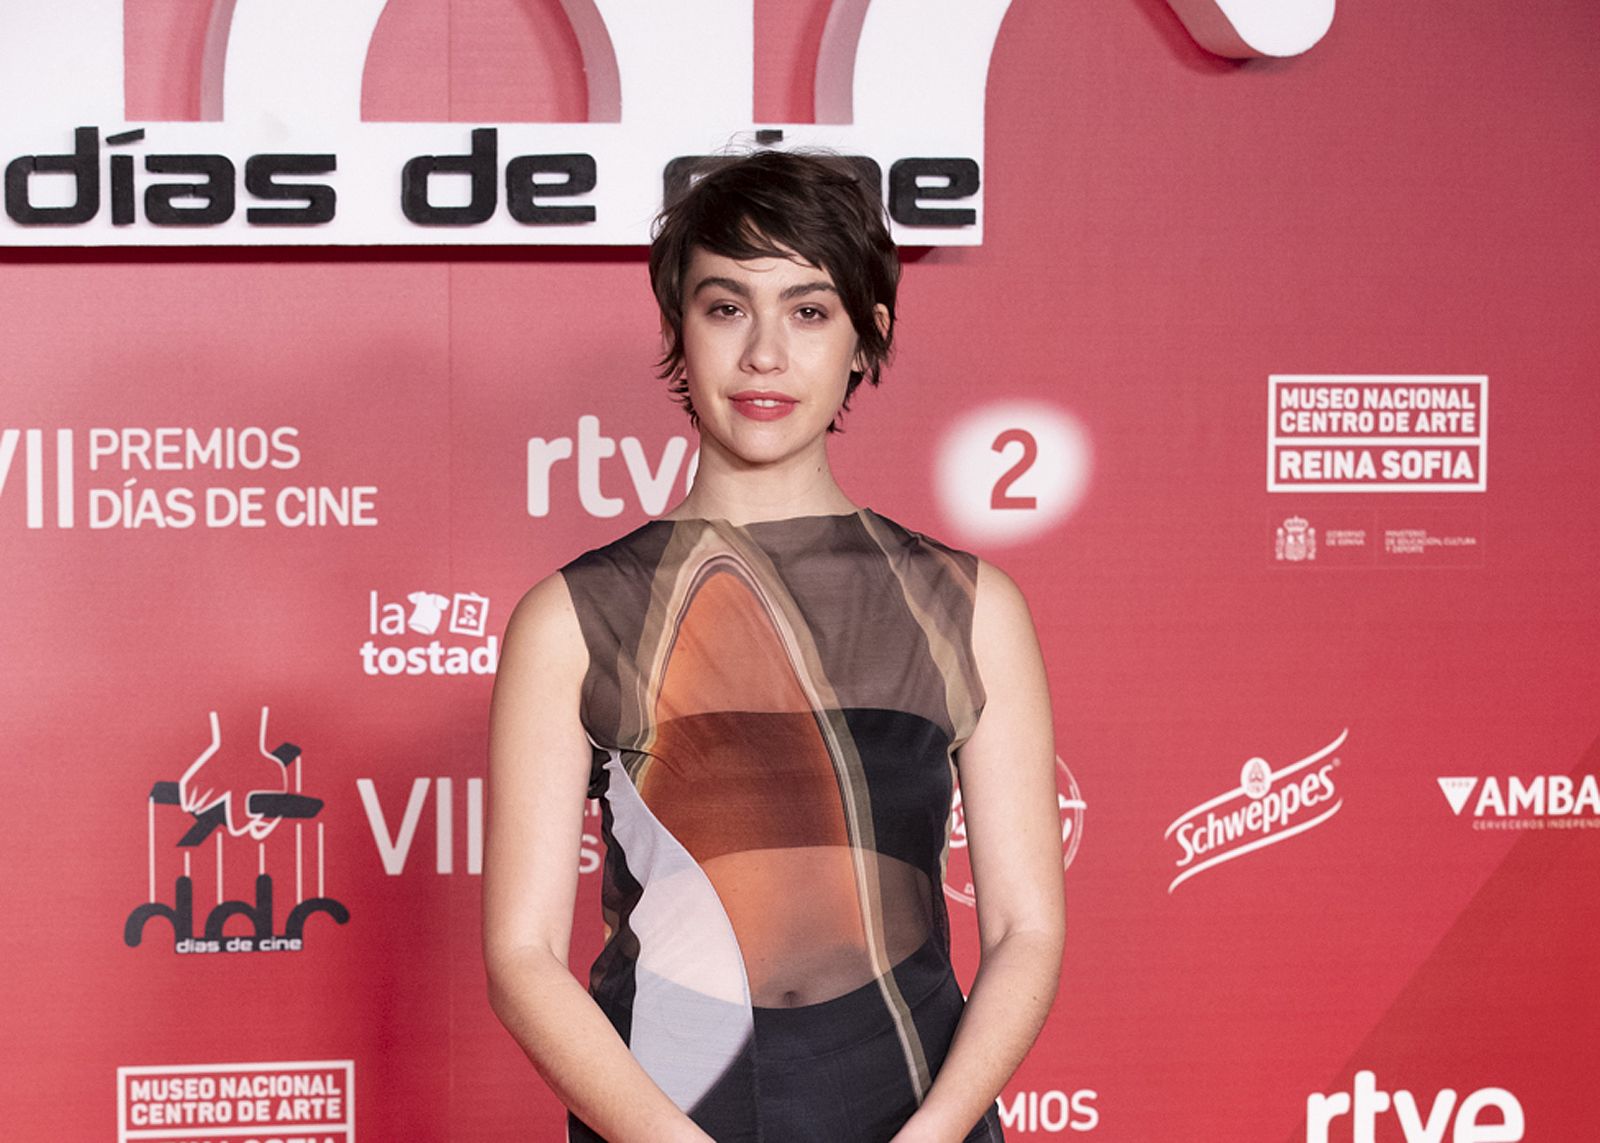 Greta Fernández en la entrega de los premios Días de cine'